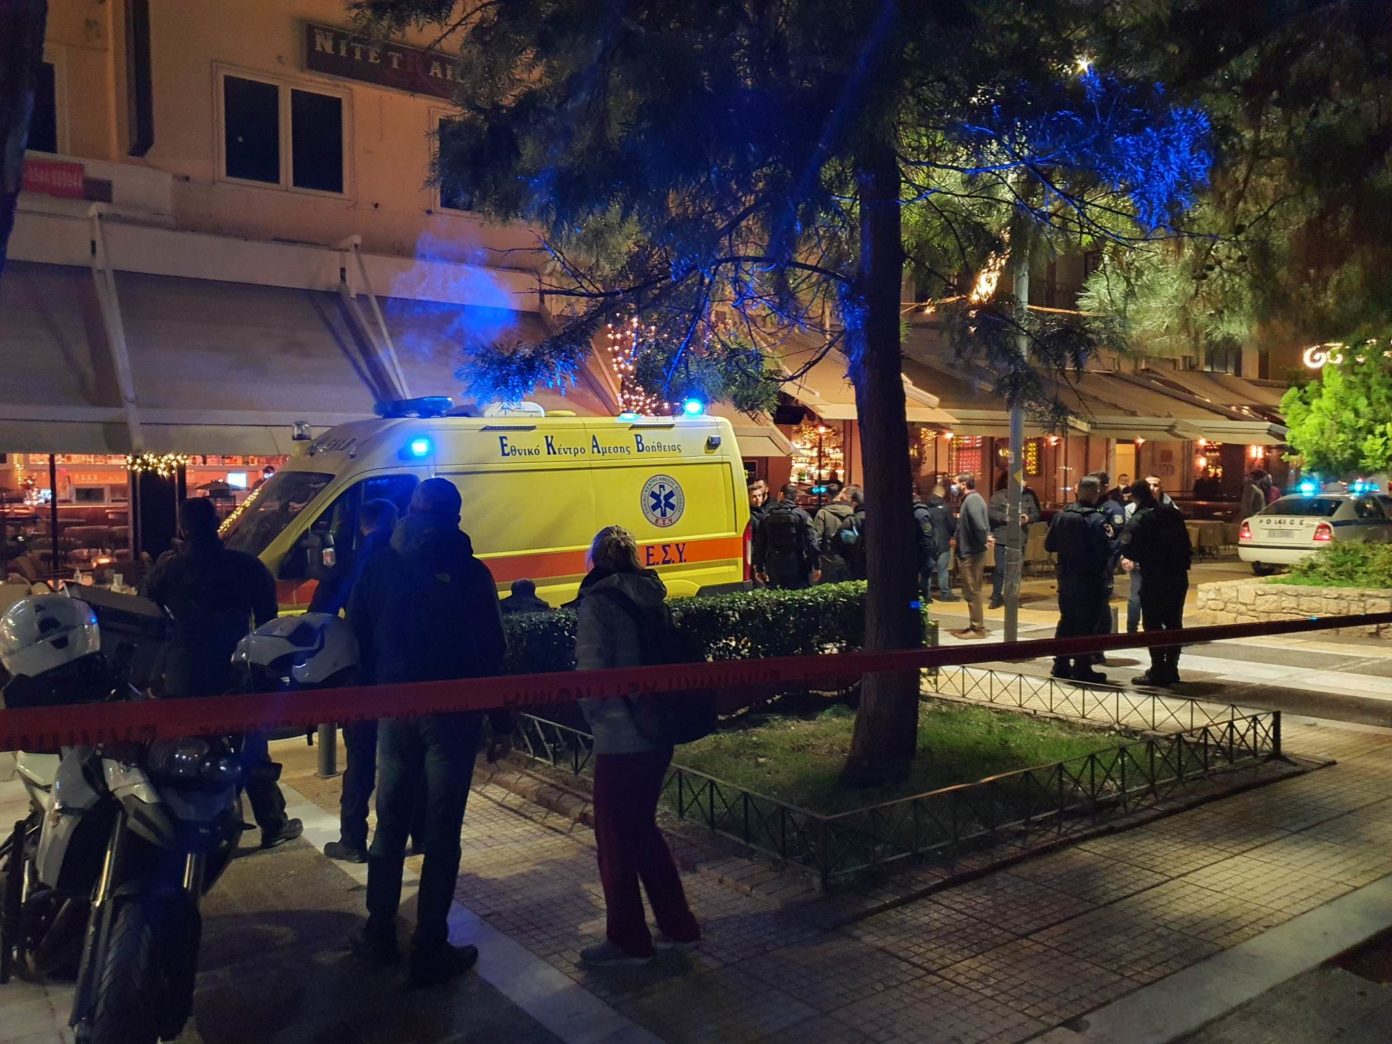 مقهى نيا سميرني - قتيلان من أصل ألباني وجرحان هما حصيلة الهجوم على مقهى في ساحة نيا سميرني